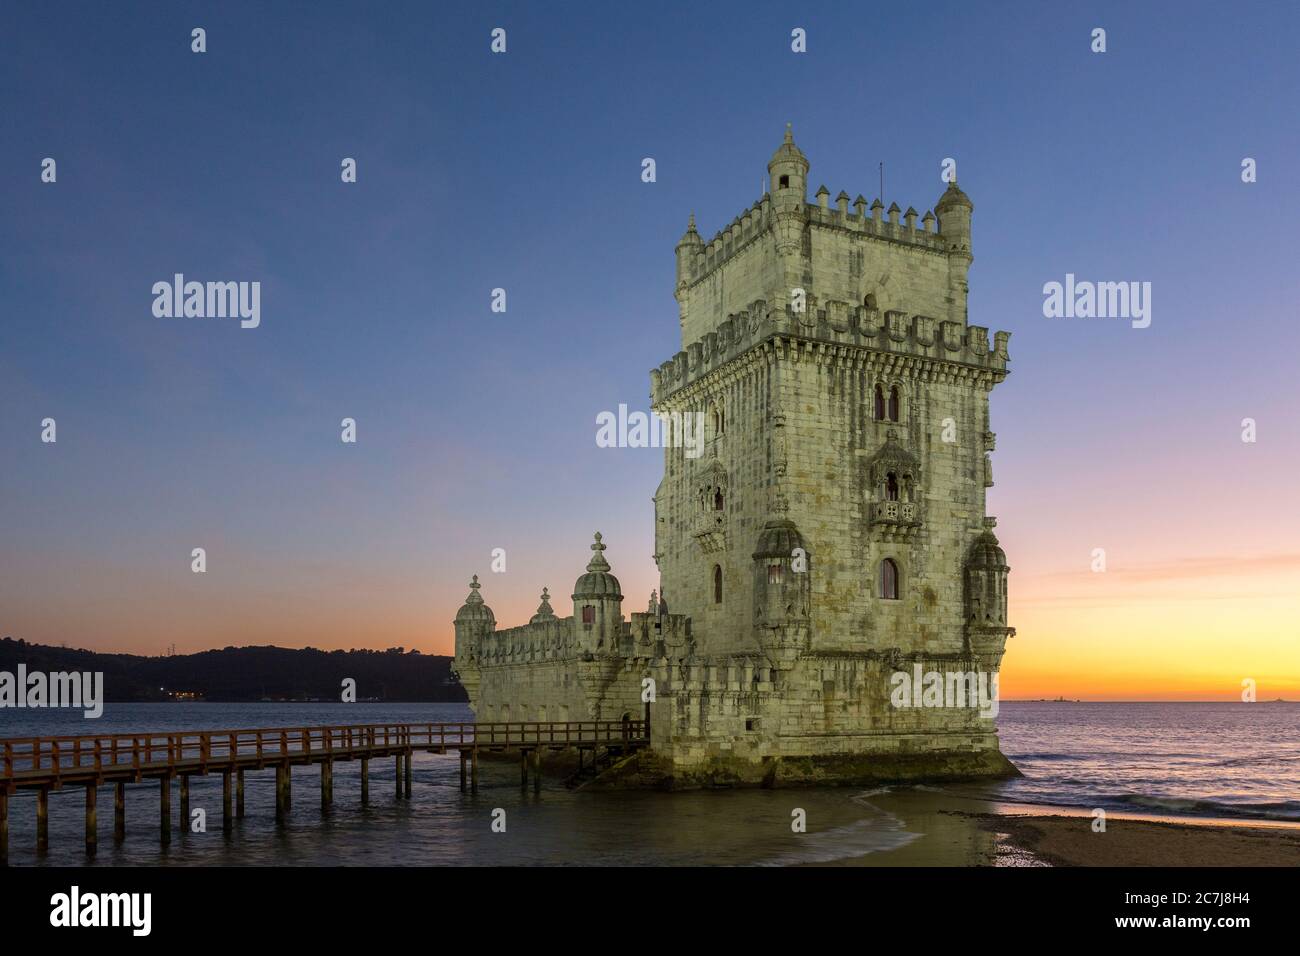 La Torre de Belém, en el barrio de Belém, en la desembocadura del Tejo, es uno de los monumentos más famosos de Lisboa Foto de stock